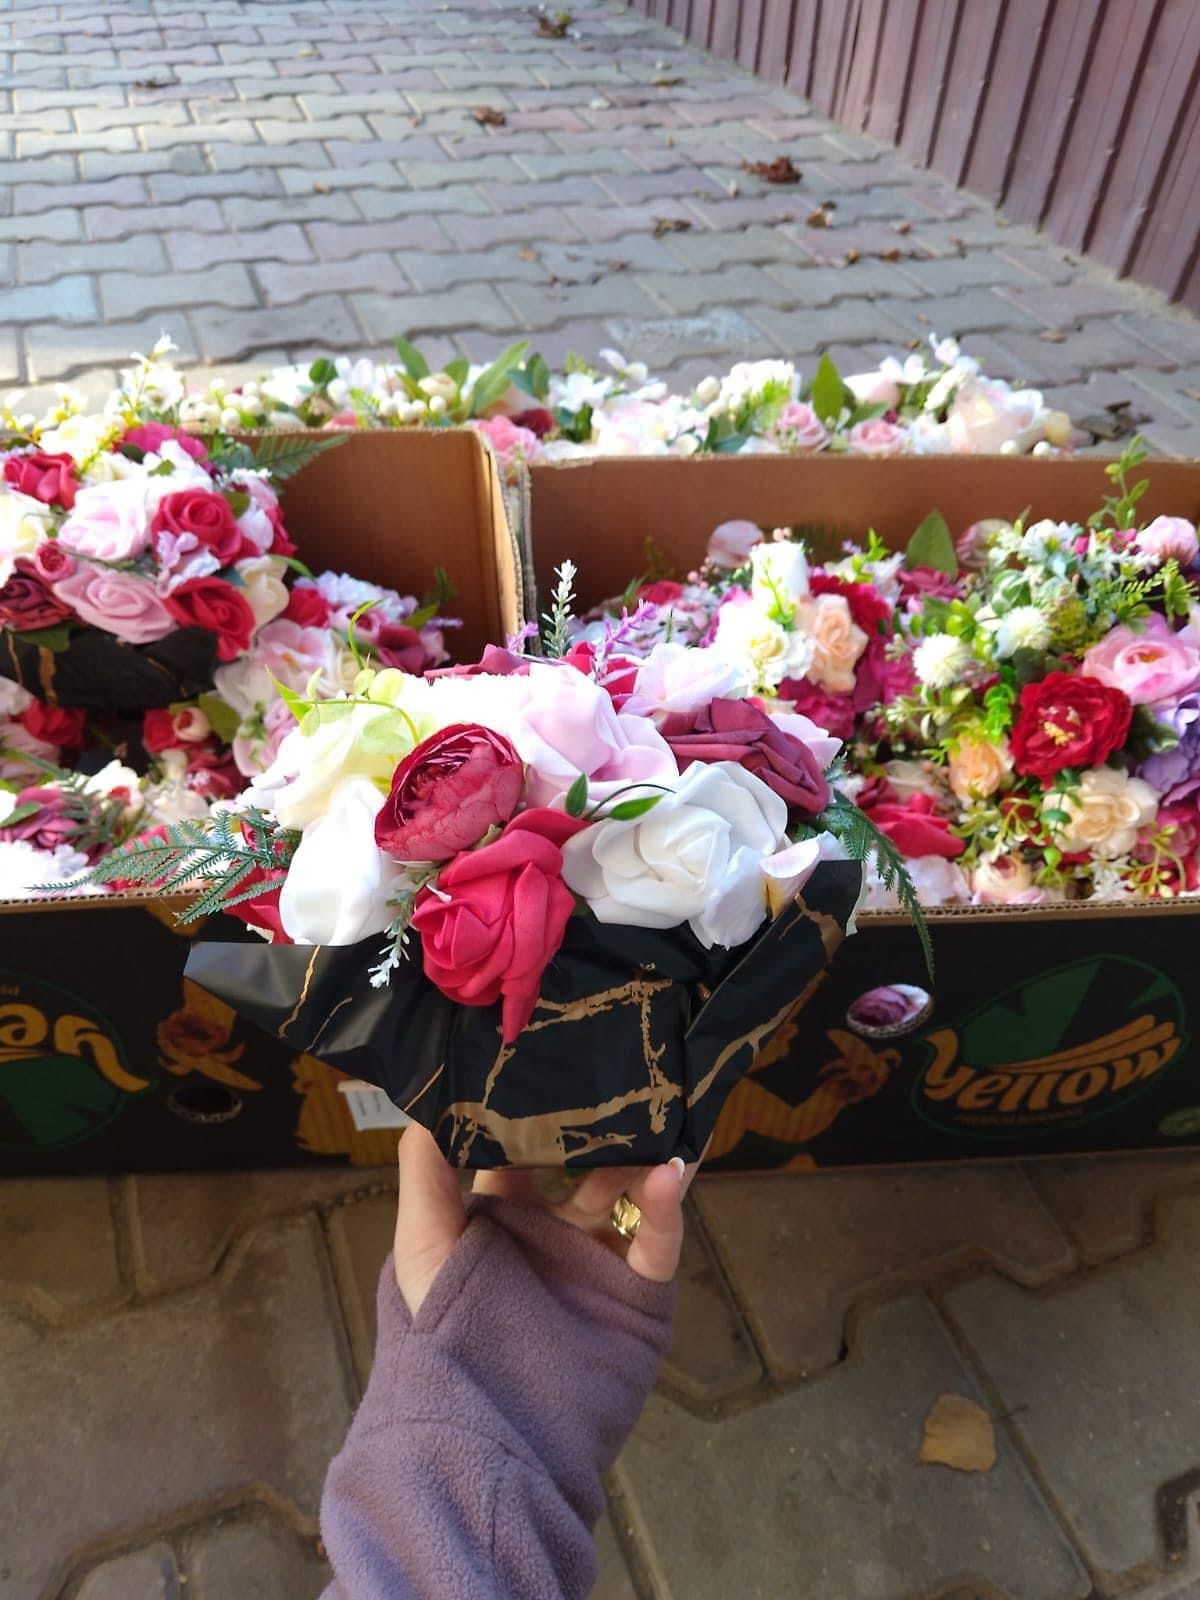 Vând Aranjamente Florale + prezidiu pentru botezuri/nunti